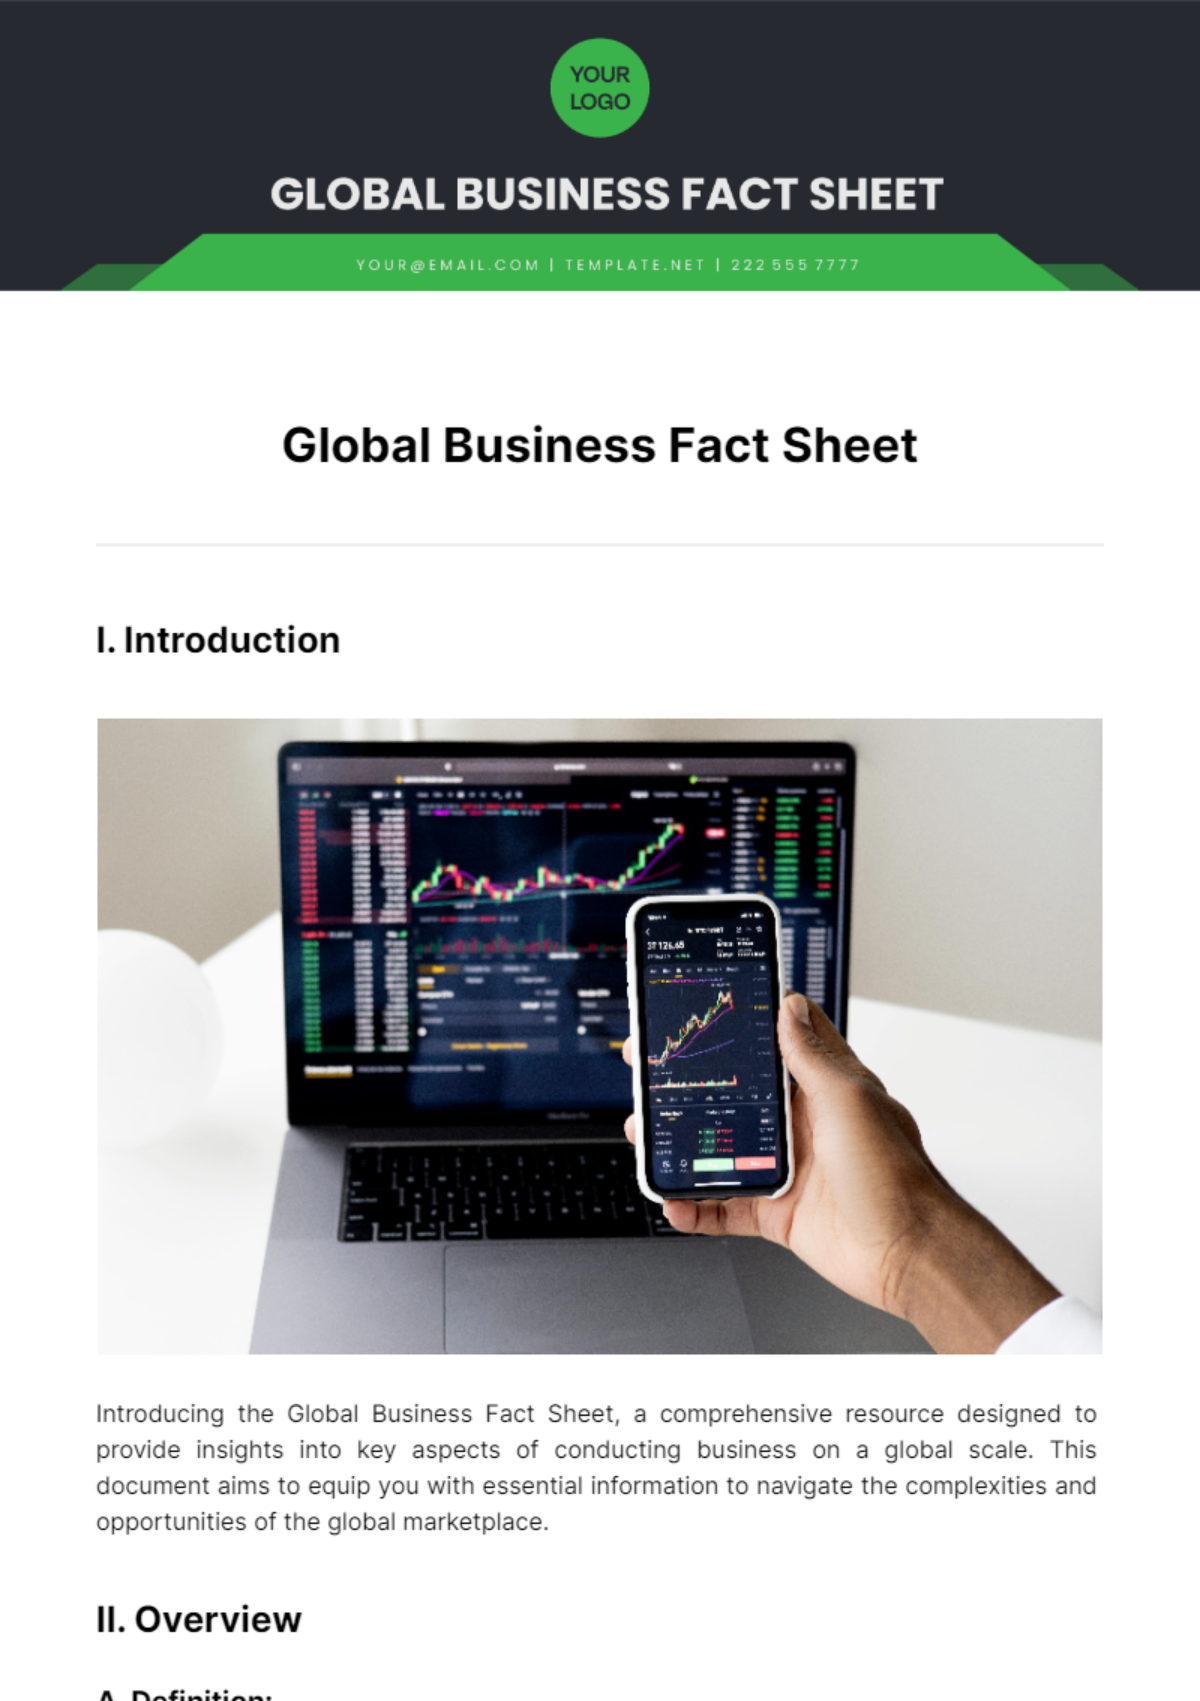 Global Business Fact Sheet Template